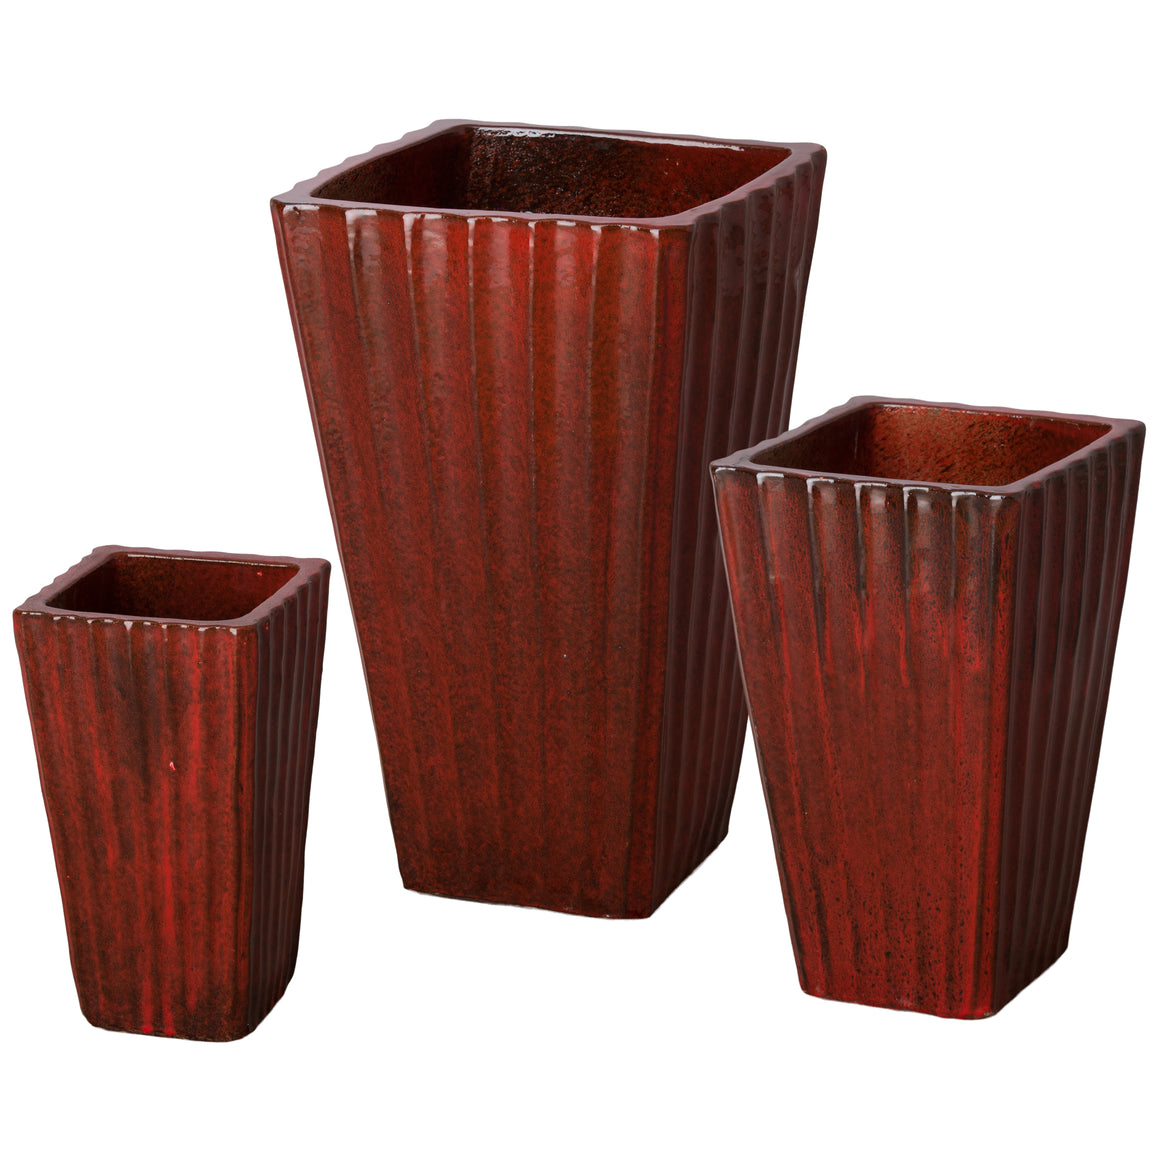 Set of Three Fluted Square Ceramic Planters - Tropical Red Glaze